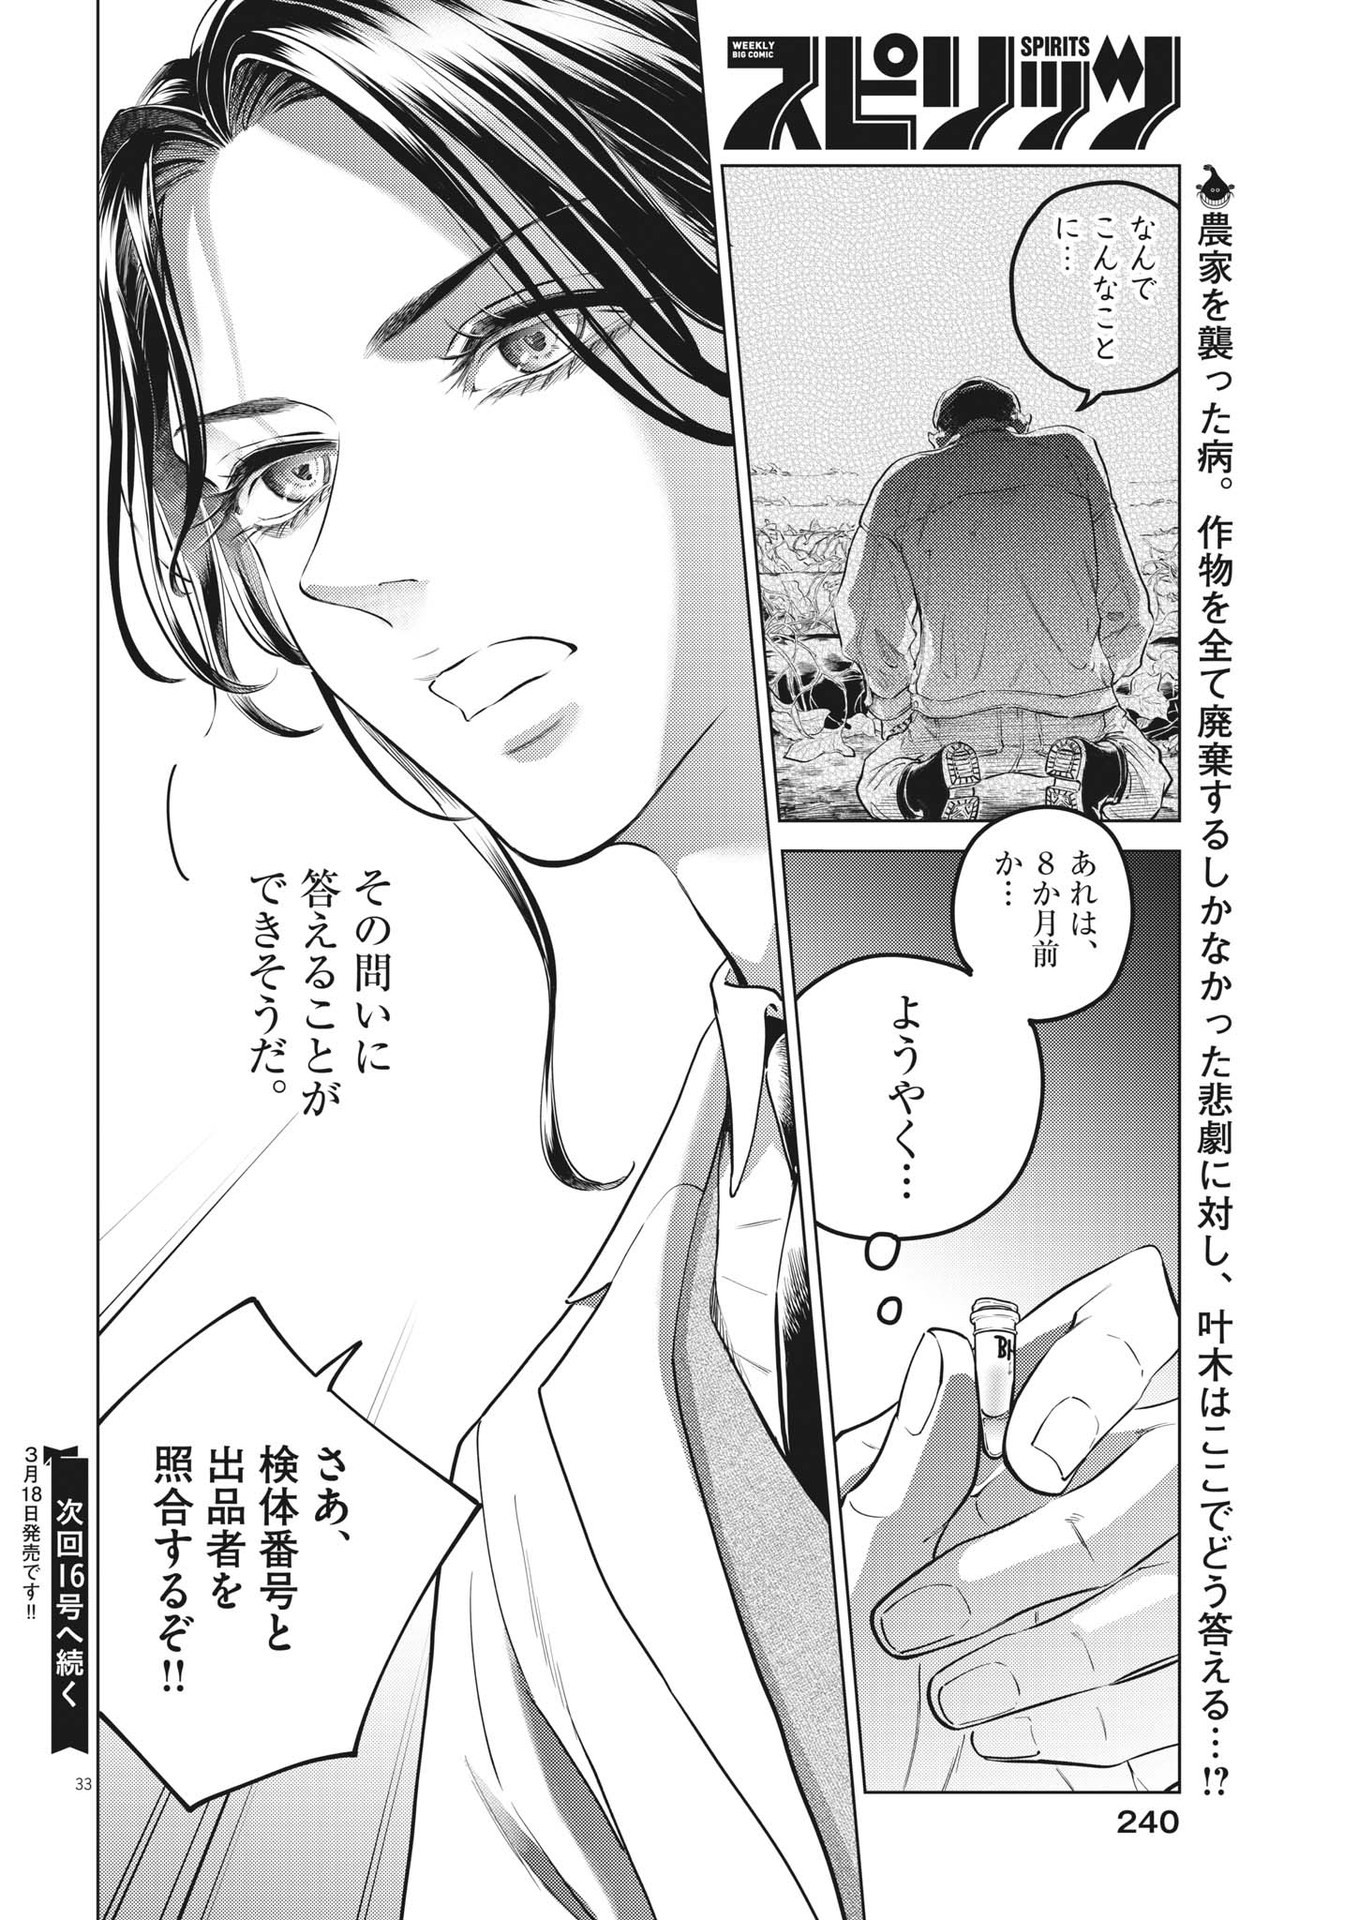 Shokubutsu Byourigaku wa Ashita no Kimi o Negau - Chapter 17 - Page 33